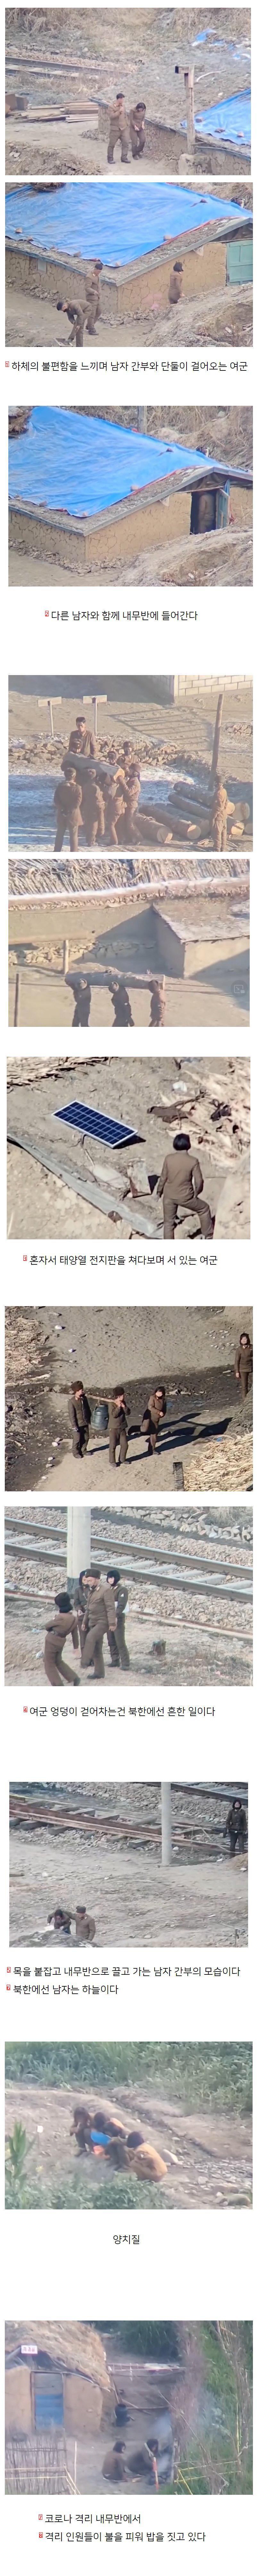 北朝鮮女性兵士の日常写真